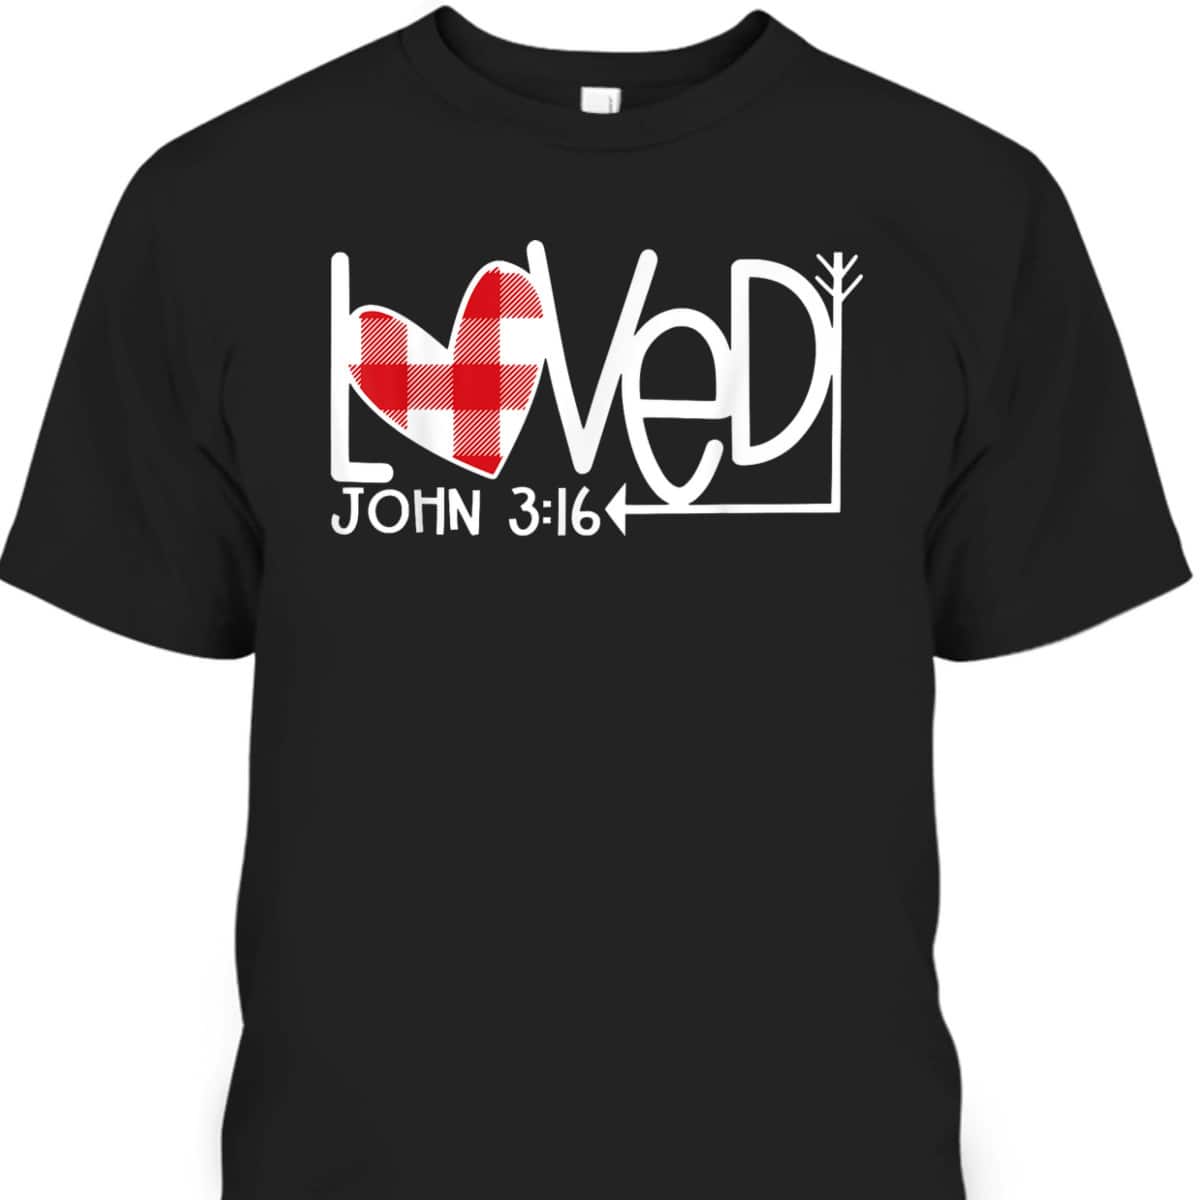 John 316Loved Valentine Heart Gift T-Shirt